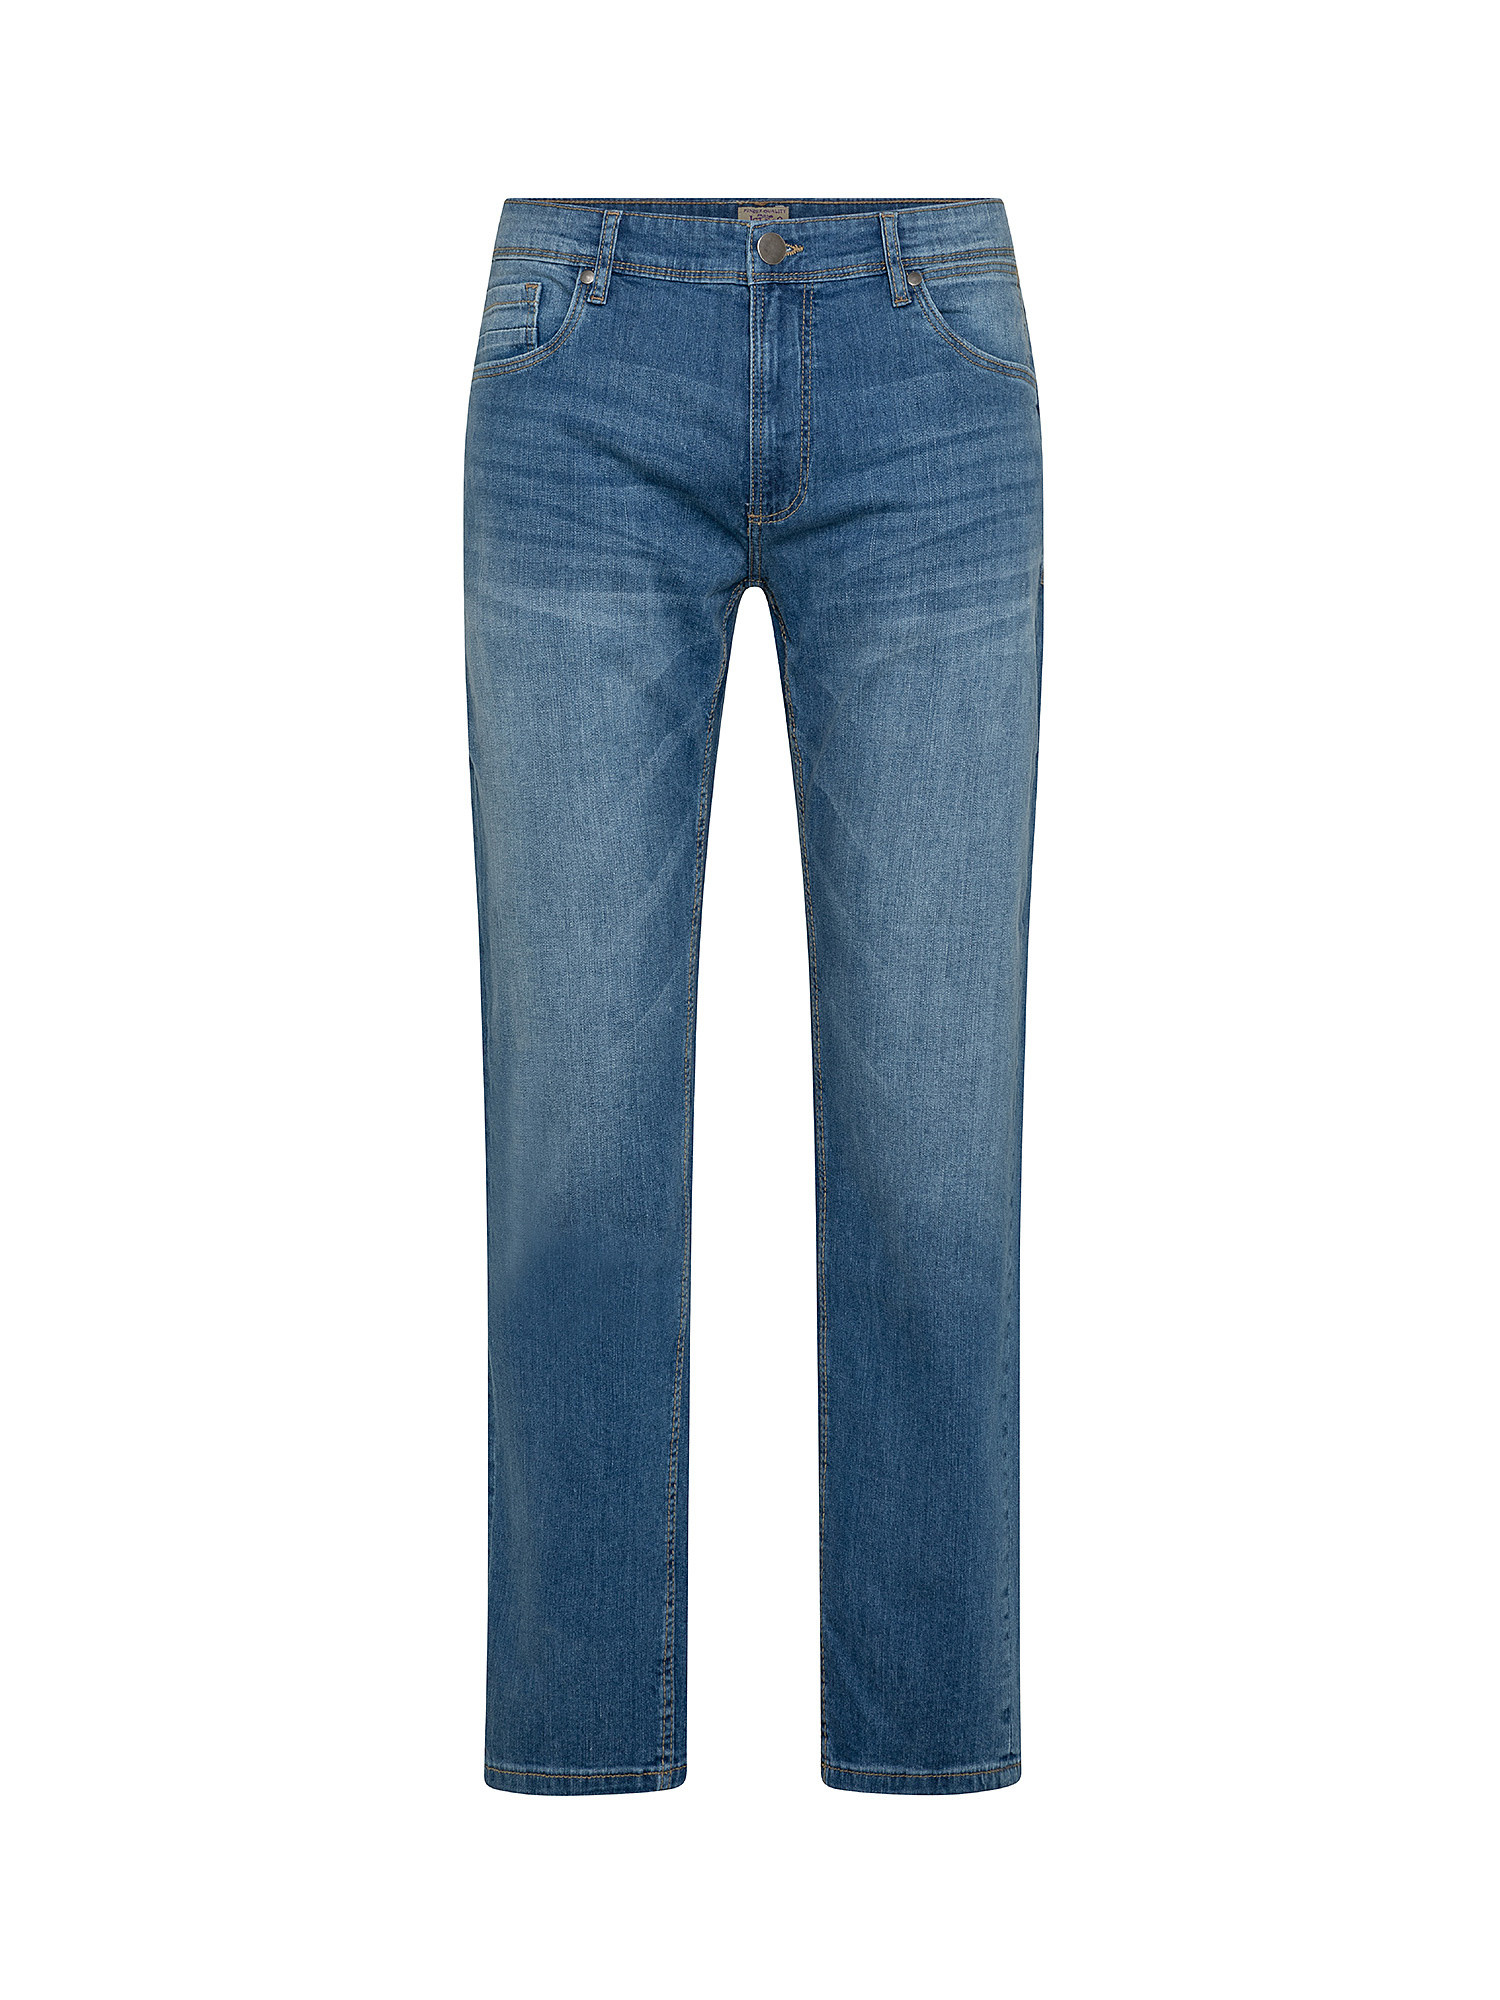 Jeans 5 tasche slim cotone leggero stretch, Blu, large